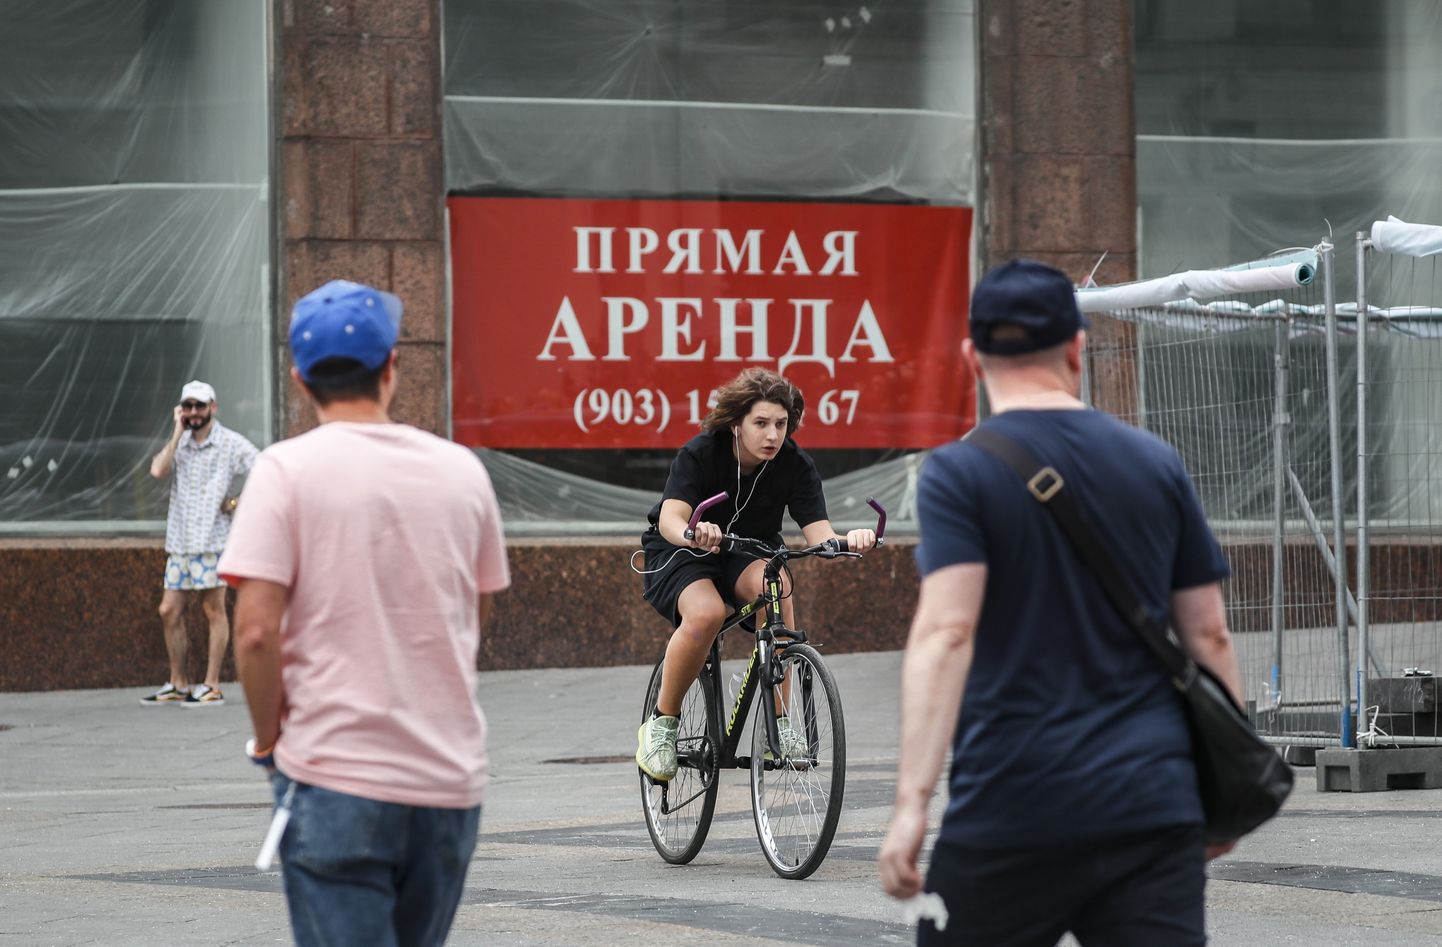 Moskva kaubanduspinnad on jäänud pärast enamike Lääne kaubamärkide lahkumist rentnikest märkimisväärselt tühjemaks.